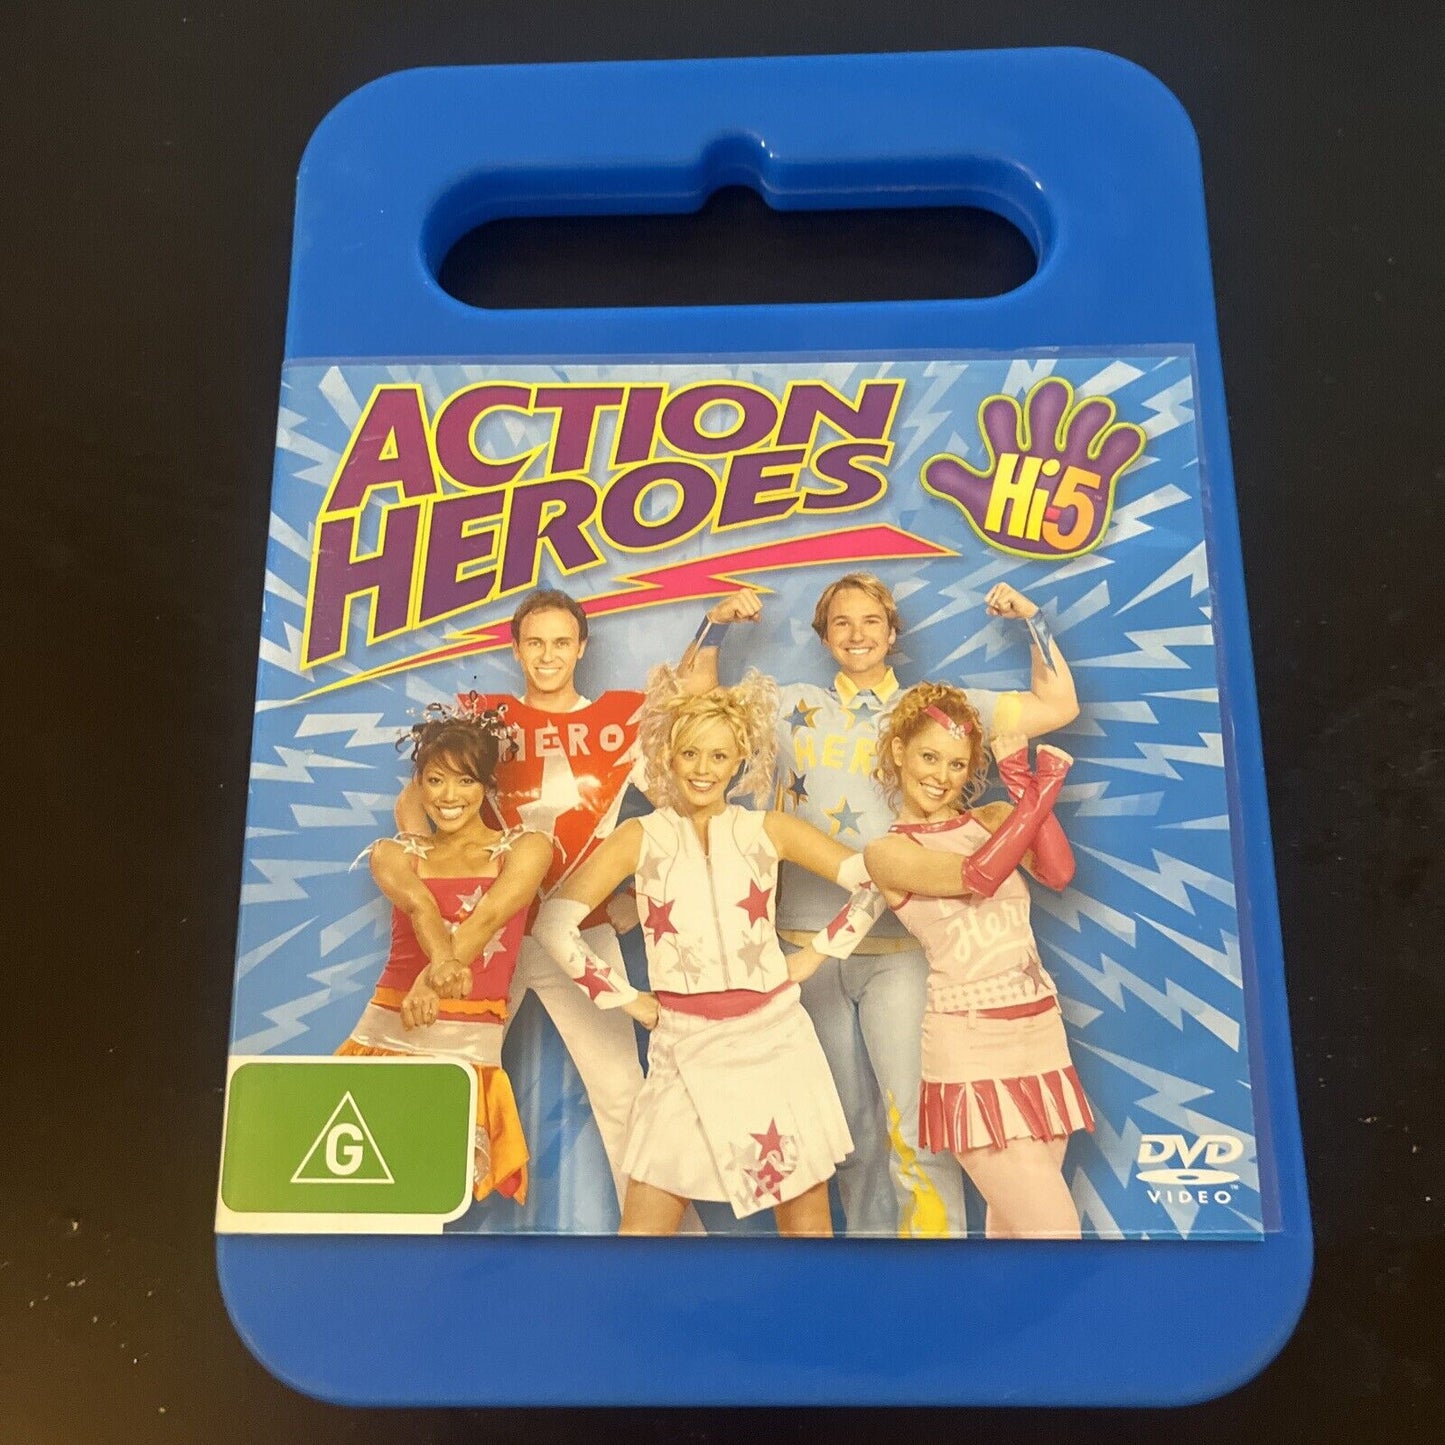 Hi-5 Action Heroes (DVD, 2005) Tim Harding, Nathan Foley, Region 4